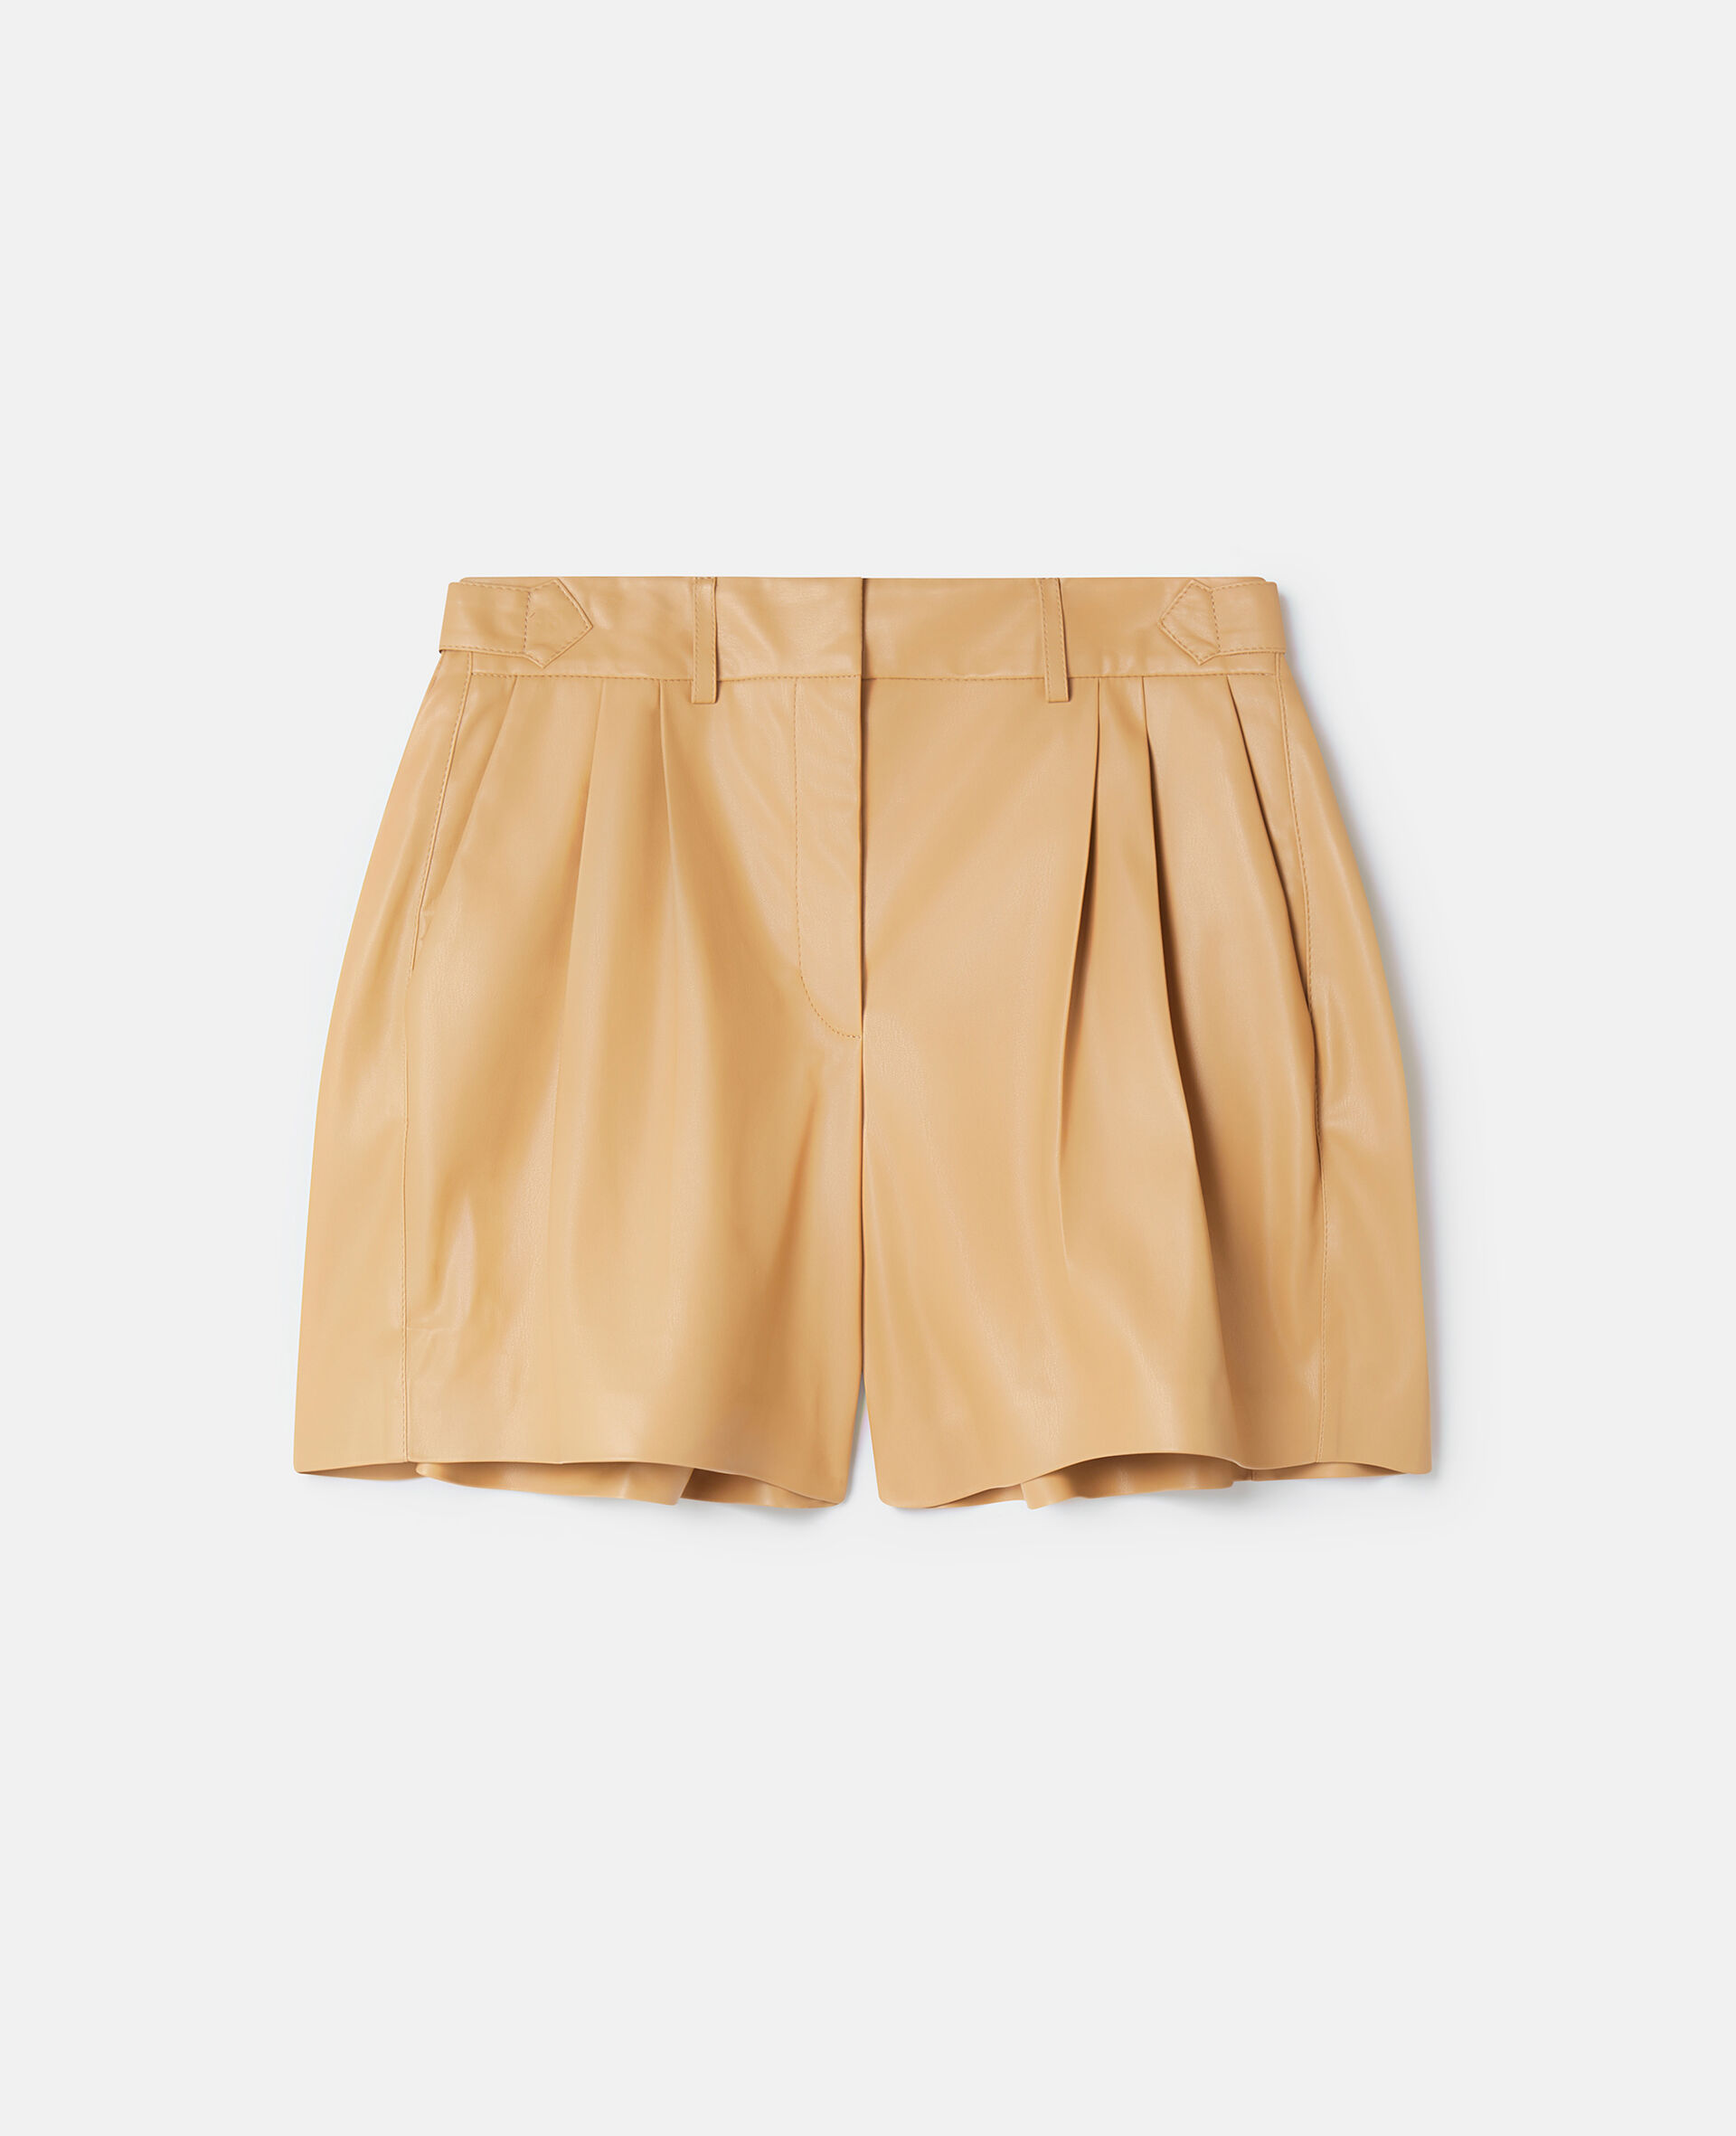 Alter Mat短裤-棕色-medium